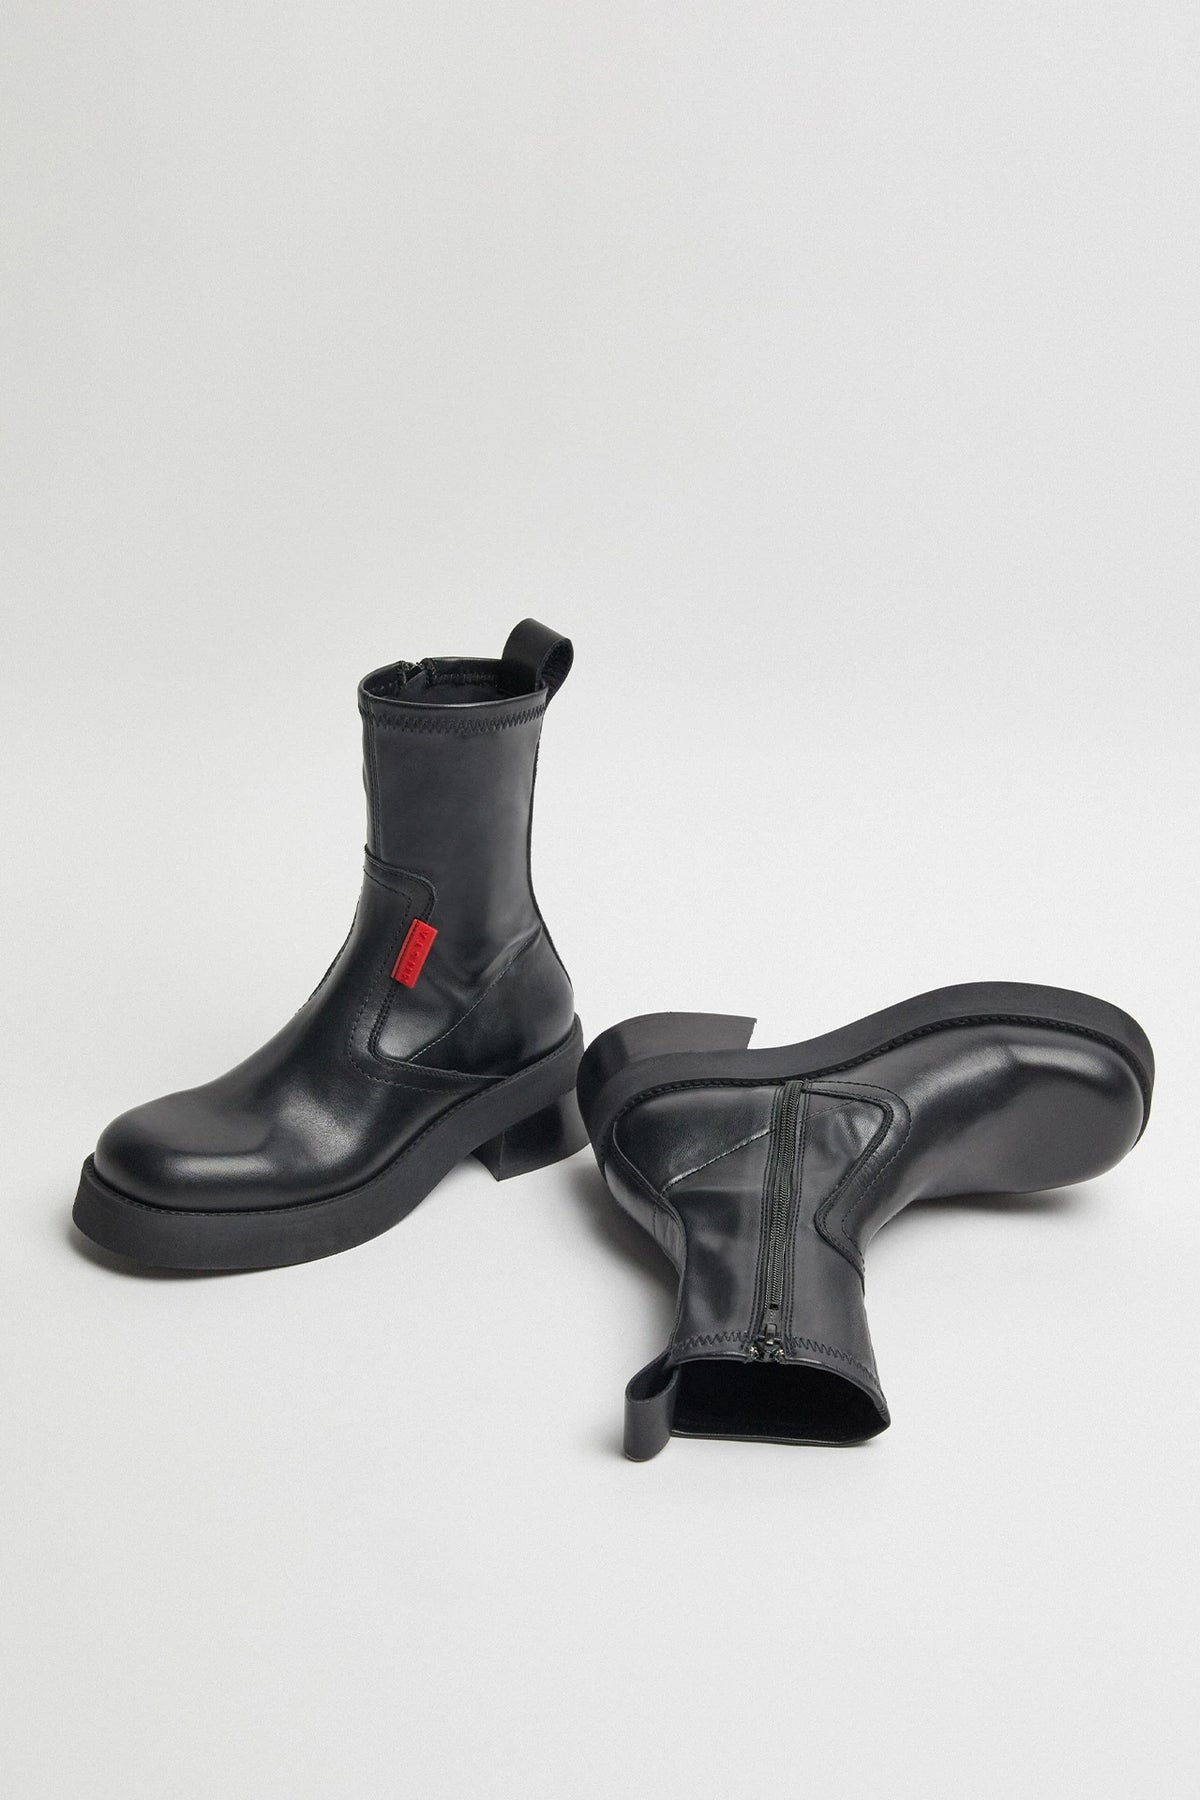 Miista Oliana Ankle Boots // Black